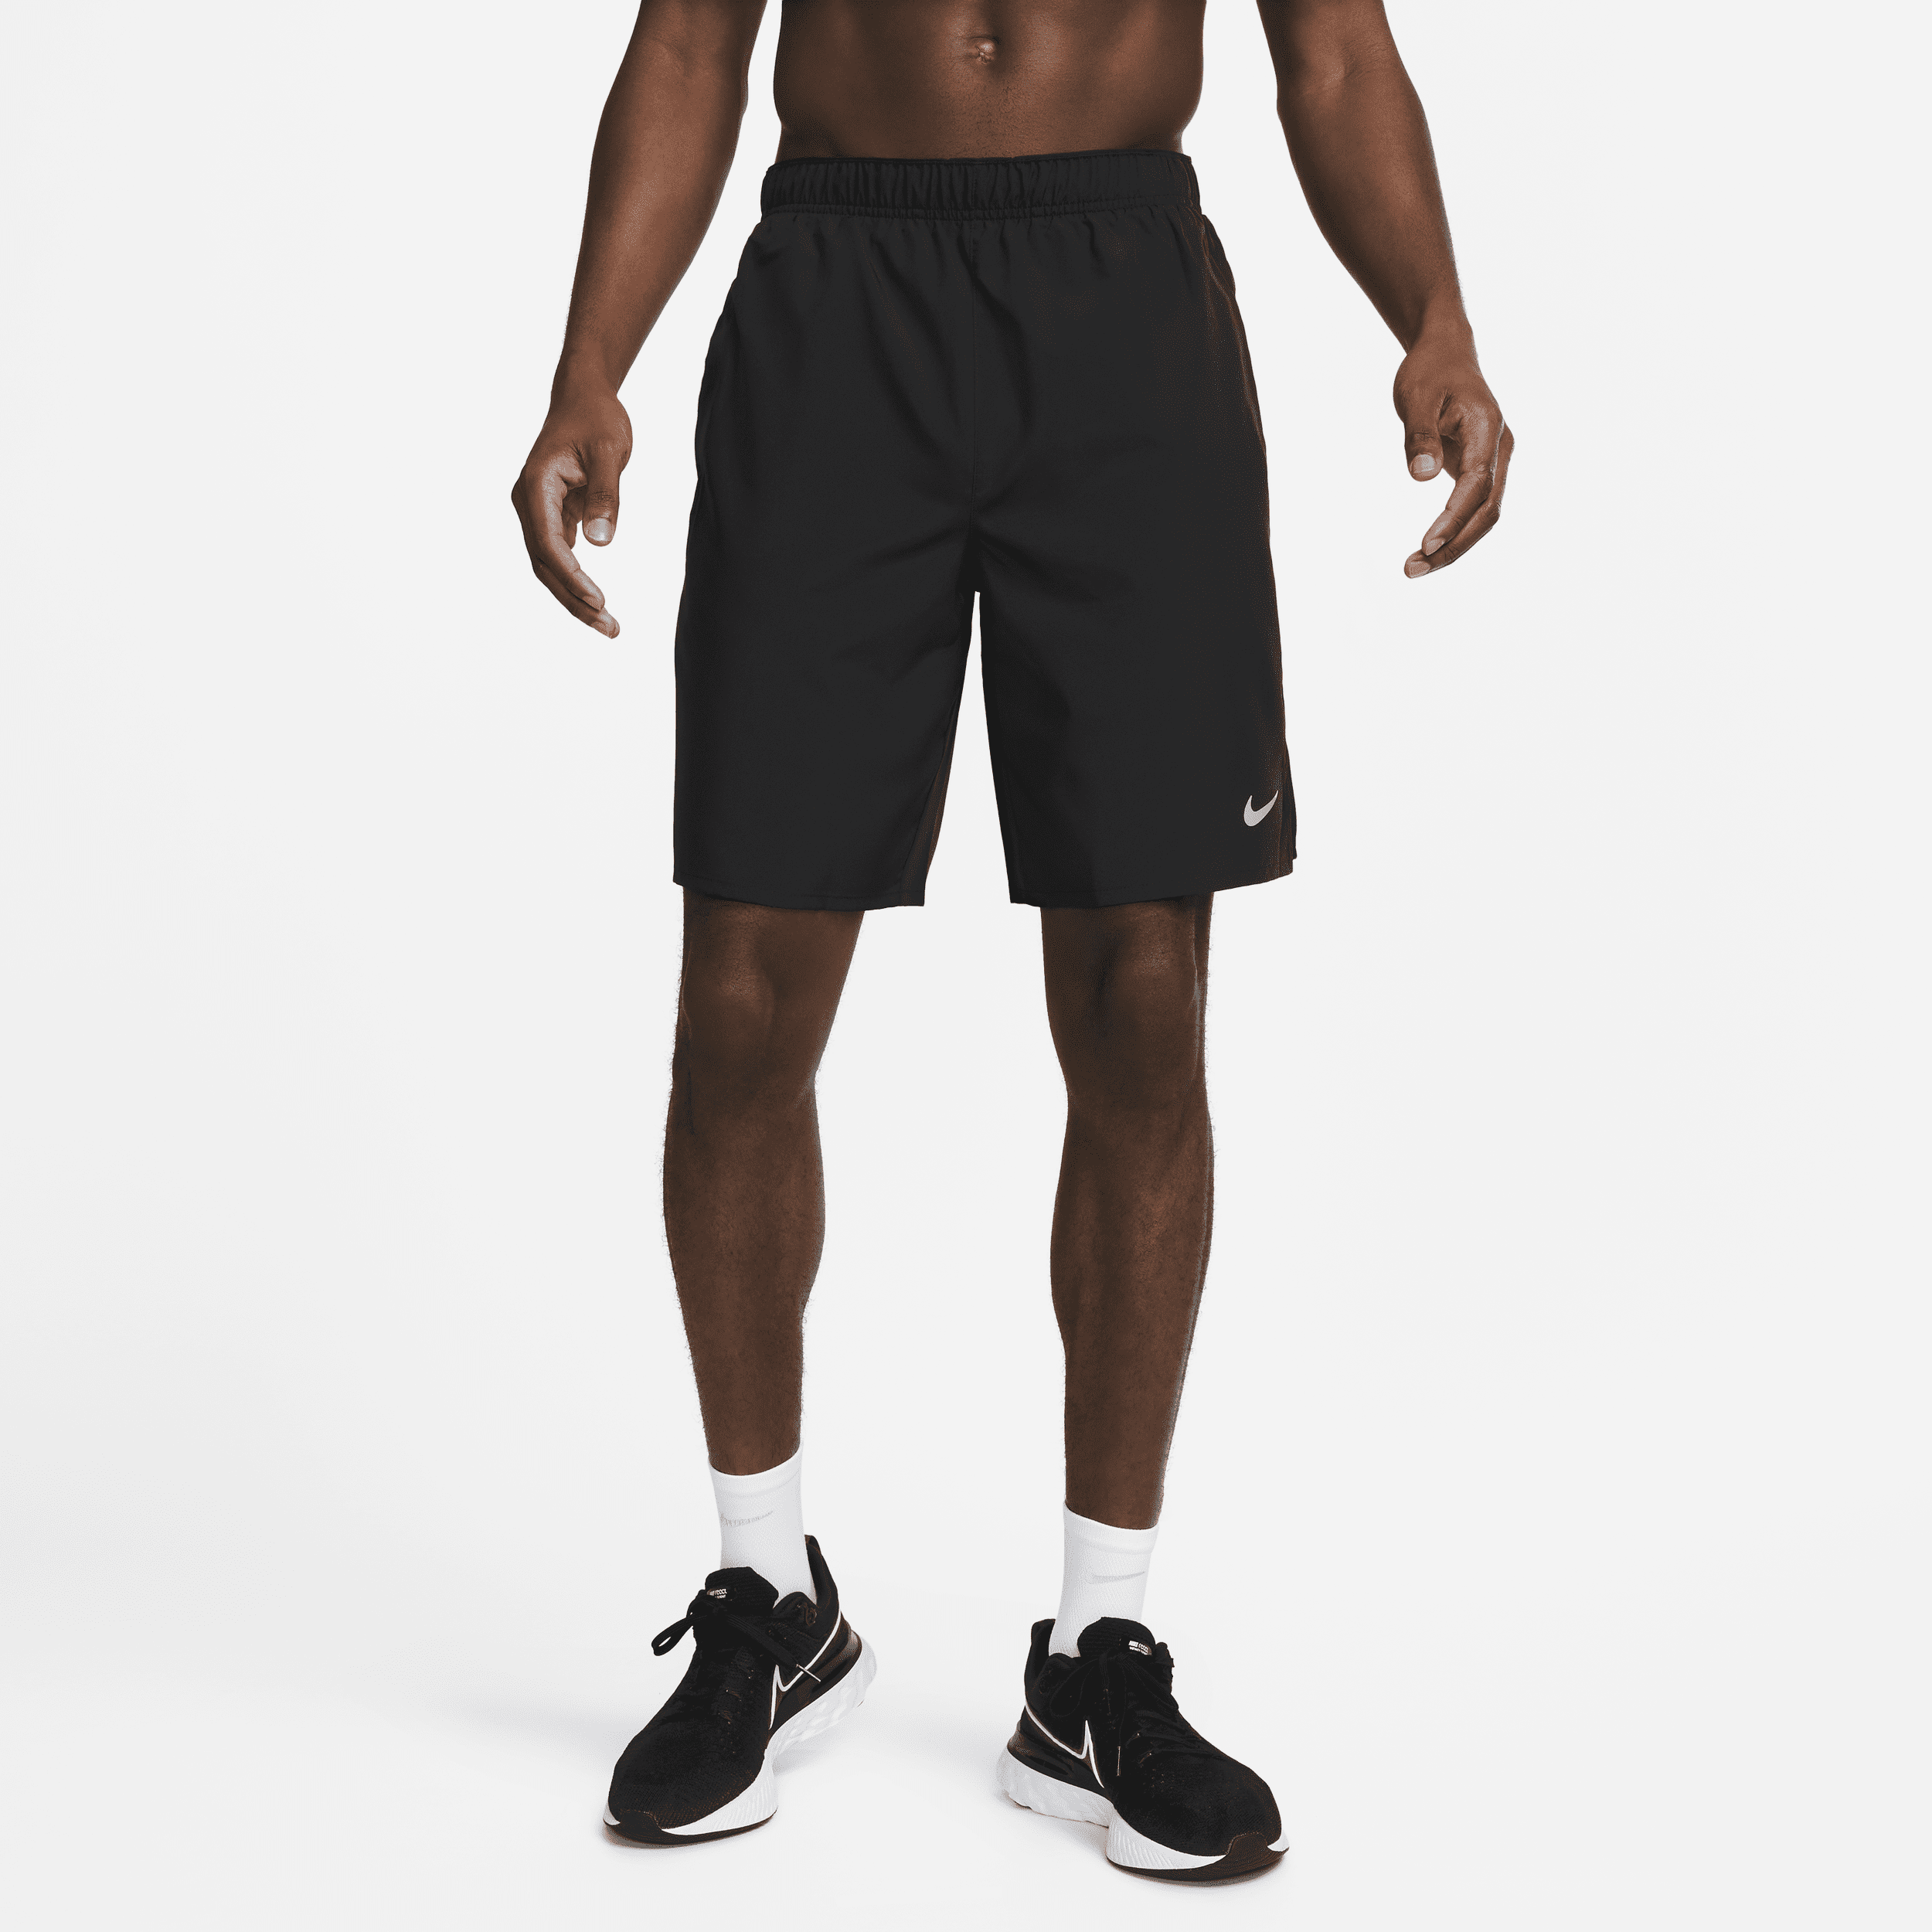 Alsidige Nike Challenger Dri-FIT-shorts (23 cm) uden for til mænd - sort